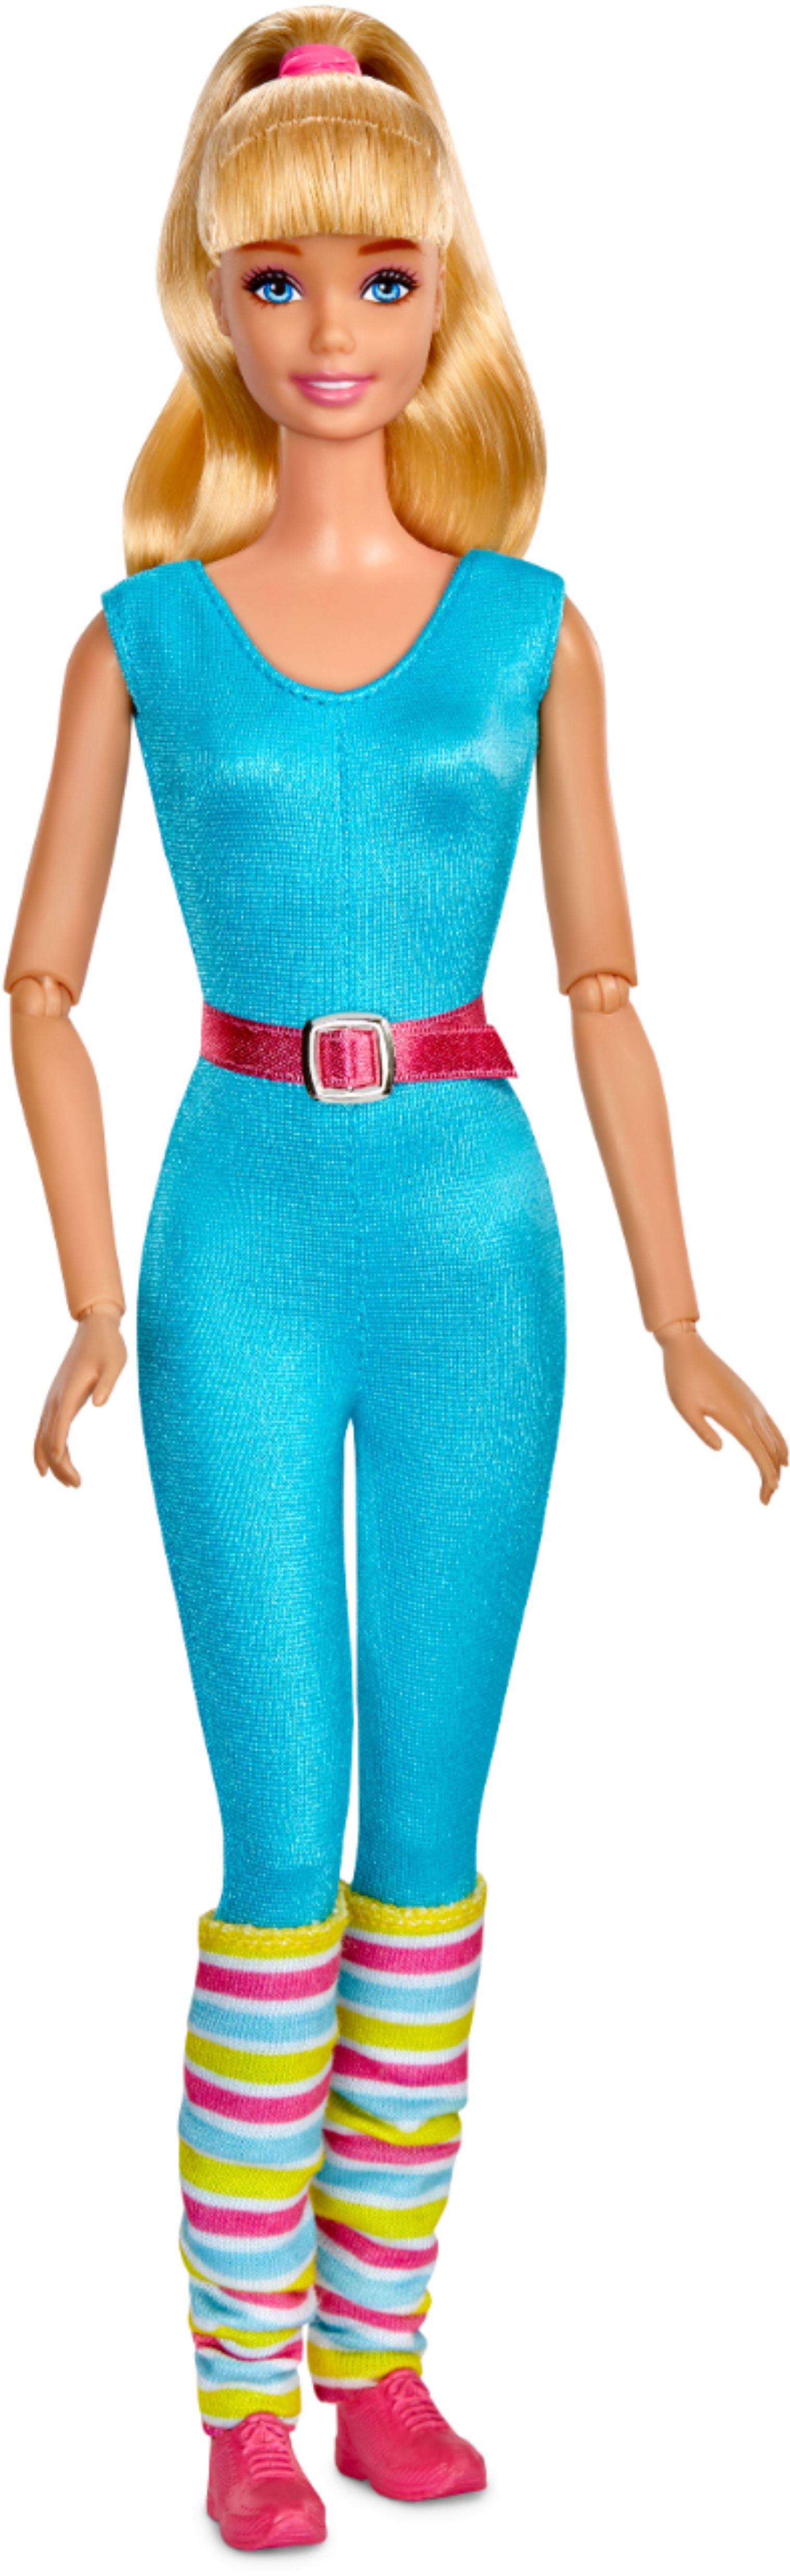 Best Buy: Toy Story 4 Barbie 11.5" Doll Blue GFL78